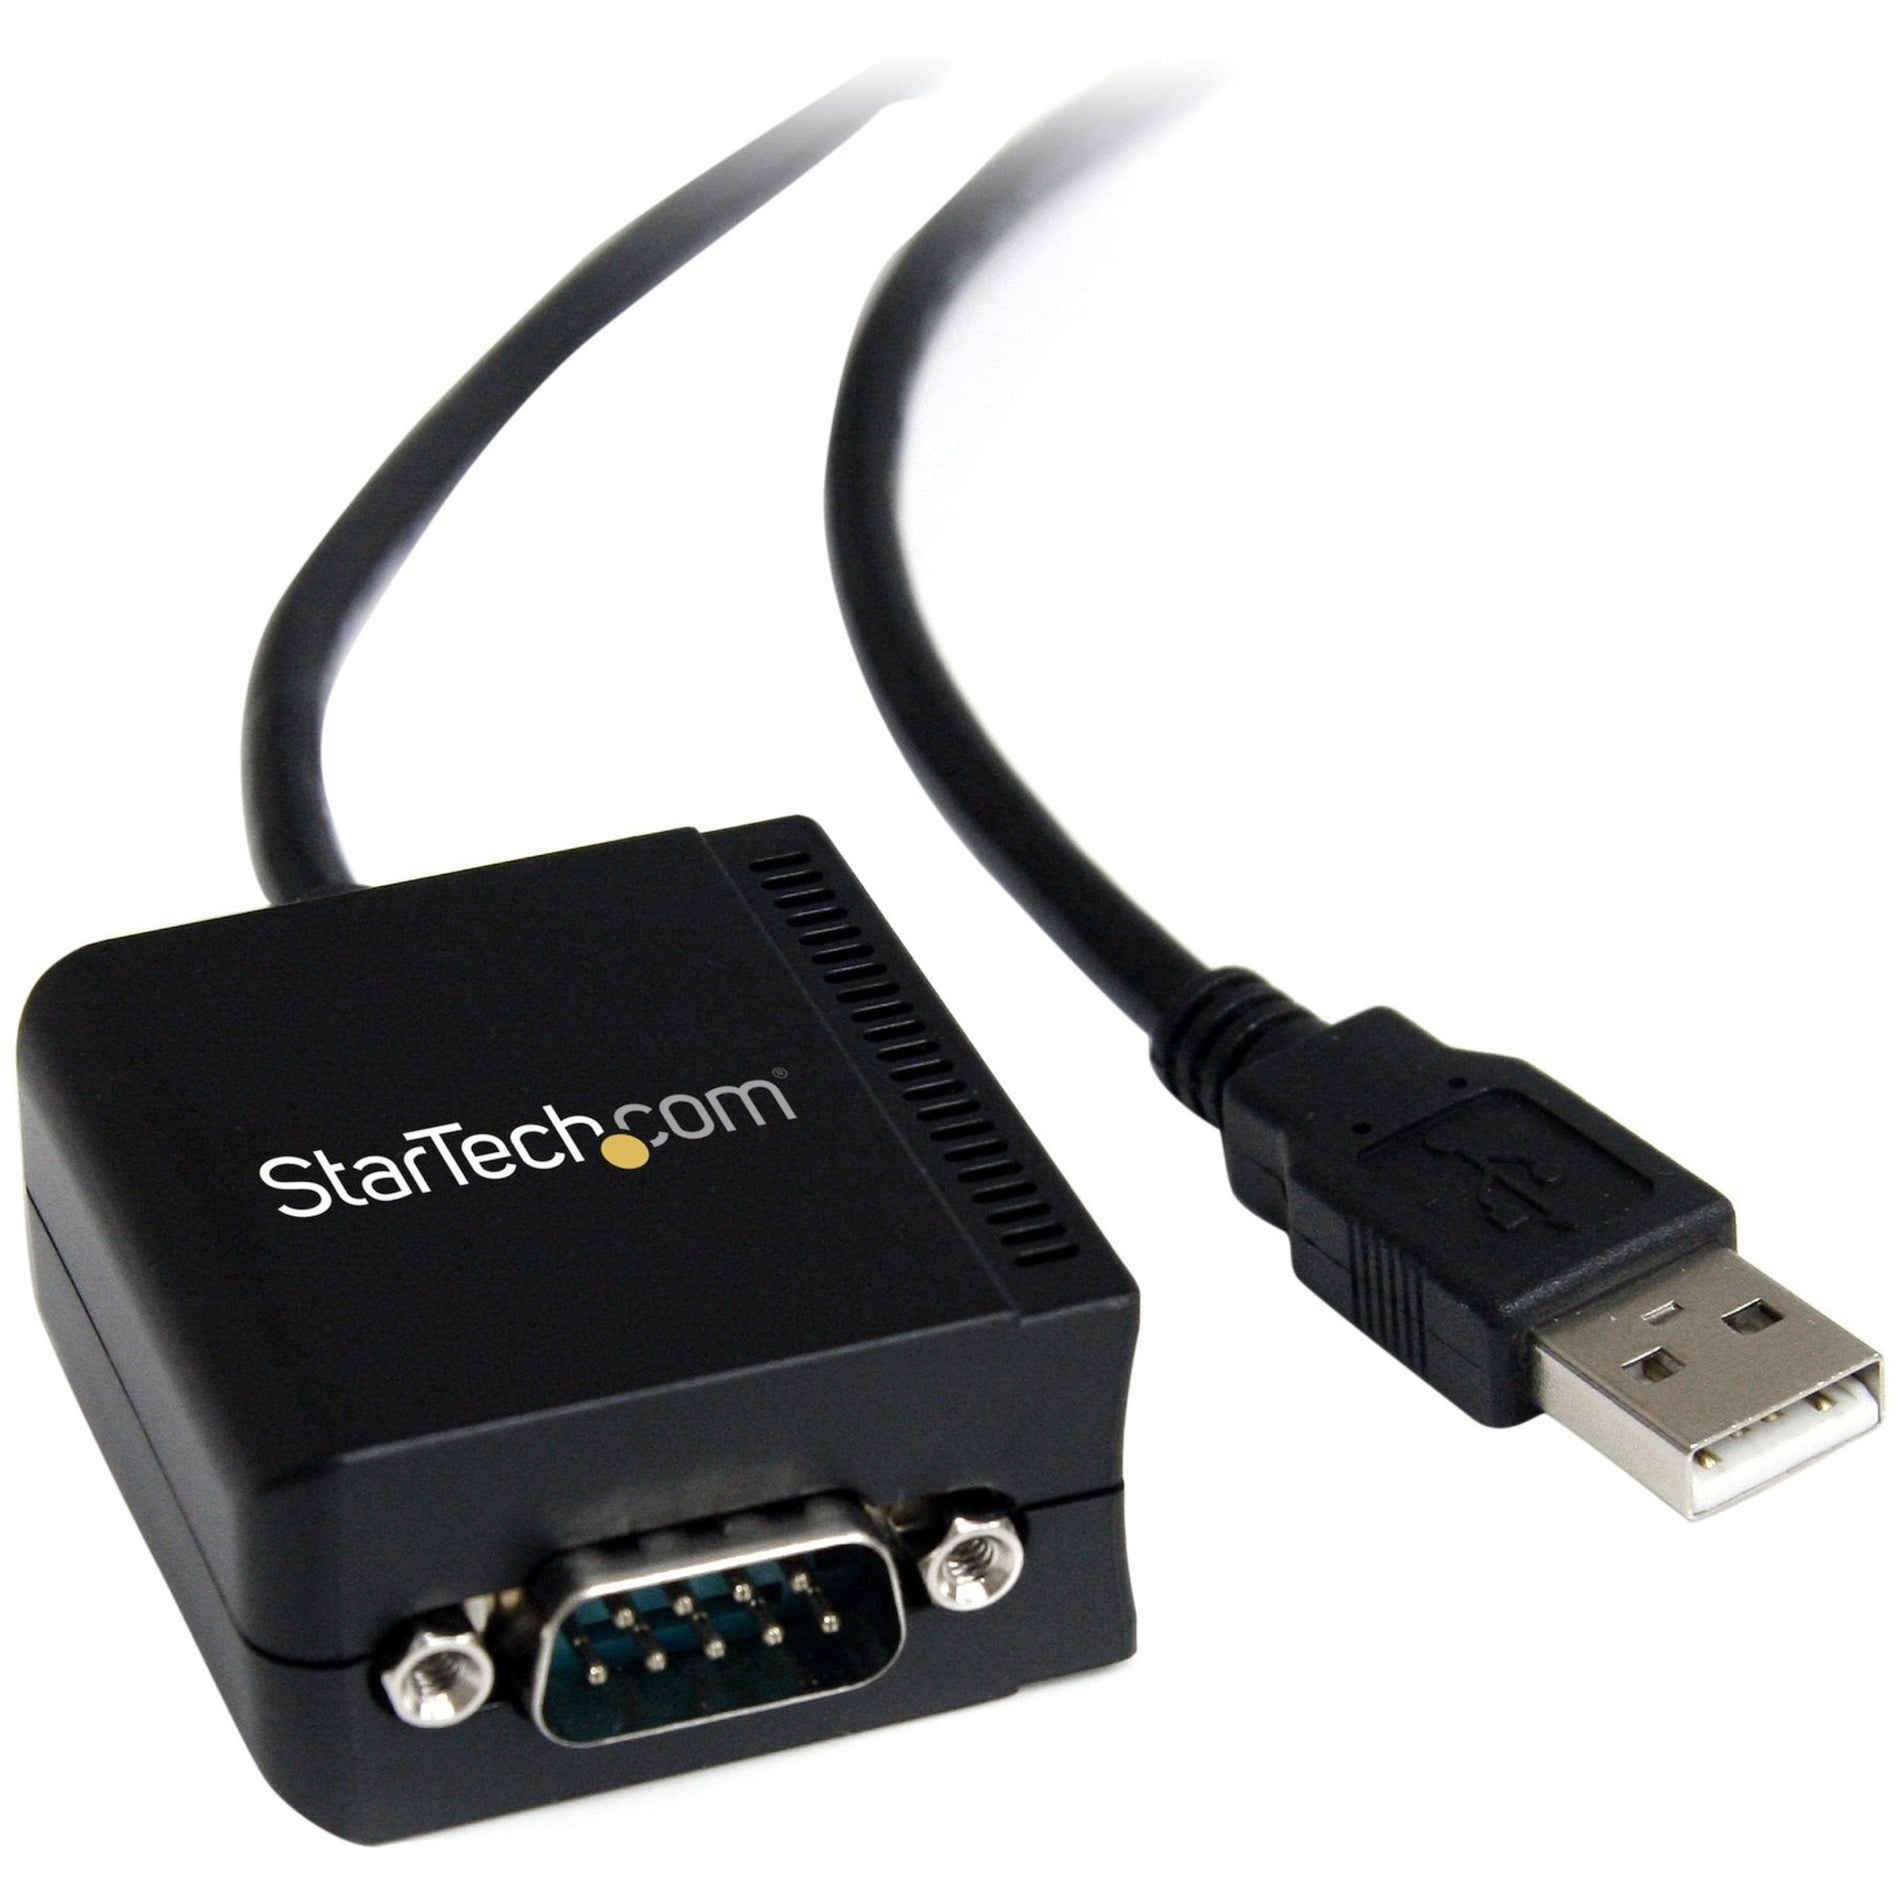 品牌：StarTech.com 产品名称：StarTech.com ICUSB2321FIS 1 端口 FTDI USB 转串行 RS232 适配器电缆，带隔离，防雷保护，电缆长度 8.20 英尺，黑色